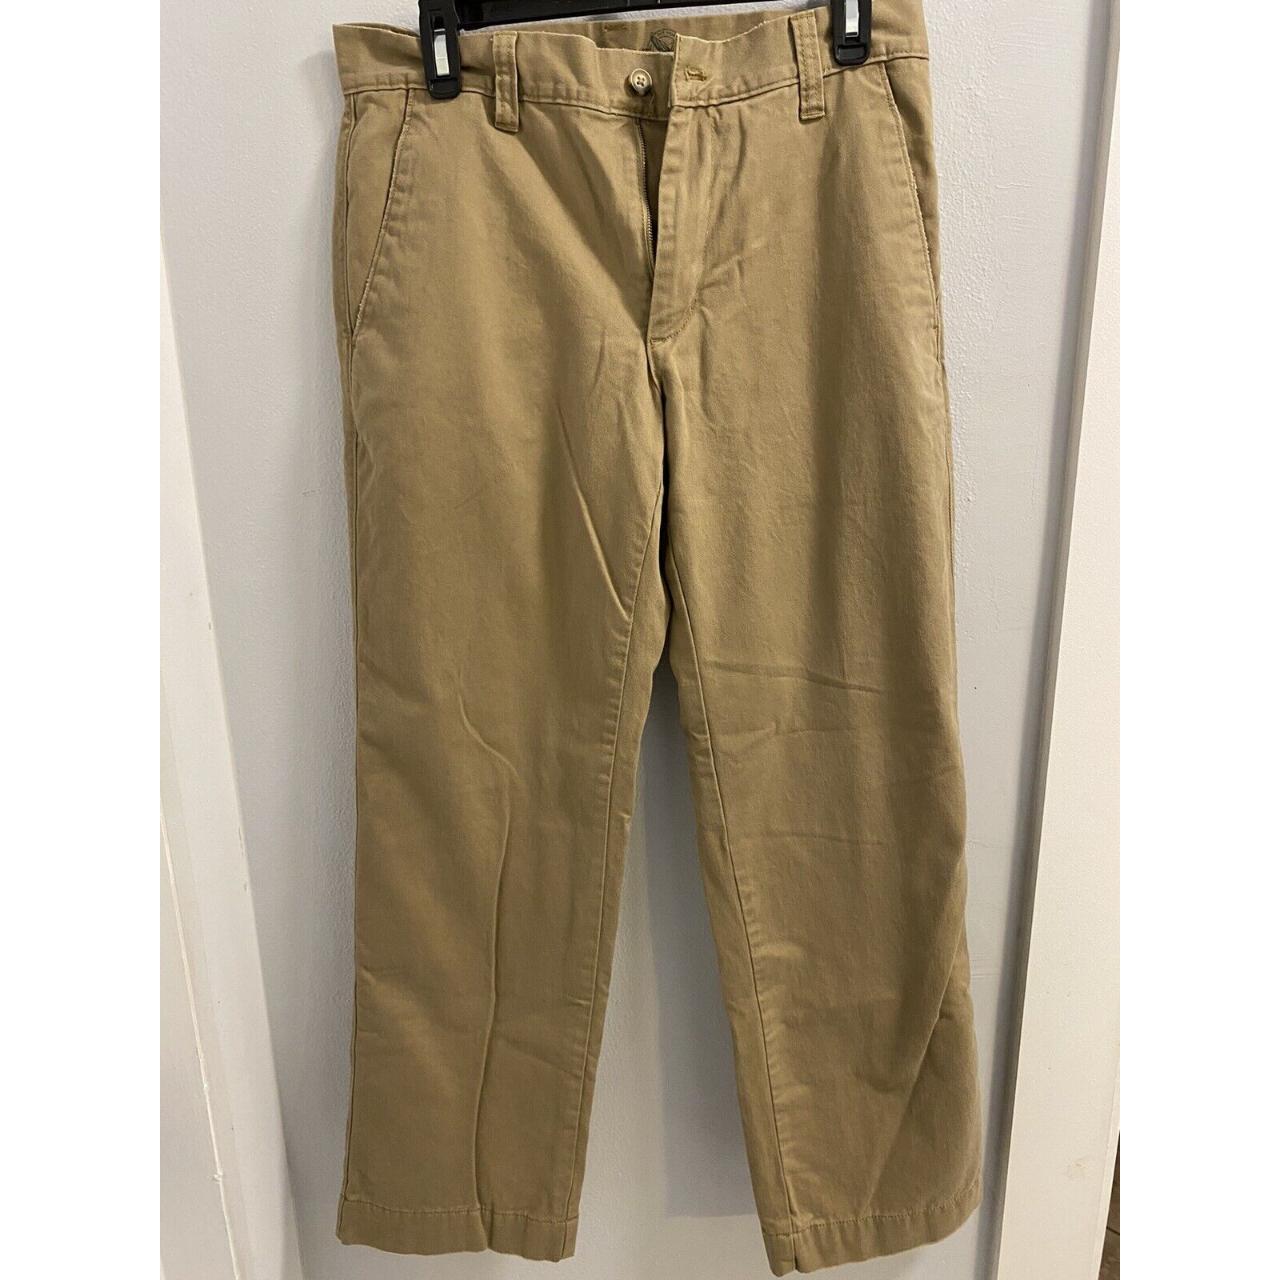 Eddie Bauer Khaki Men's Flannel-lined Pants Size... - Depop